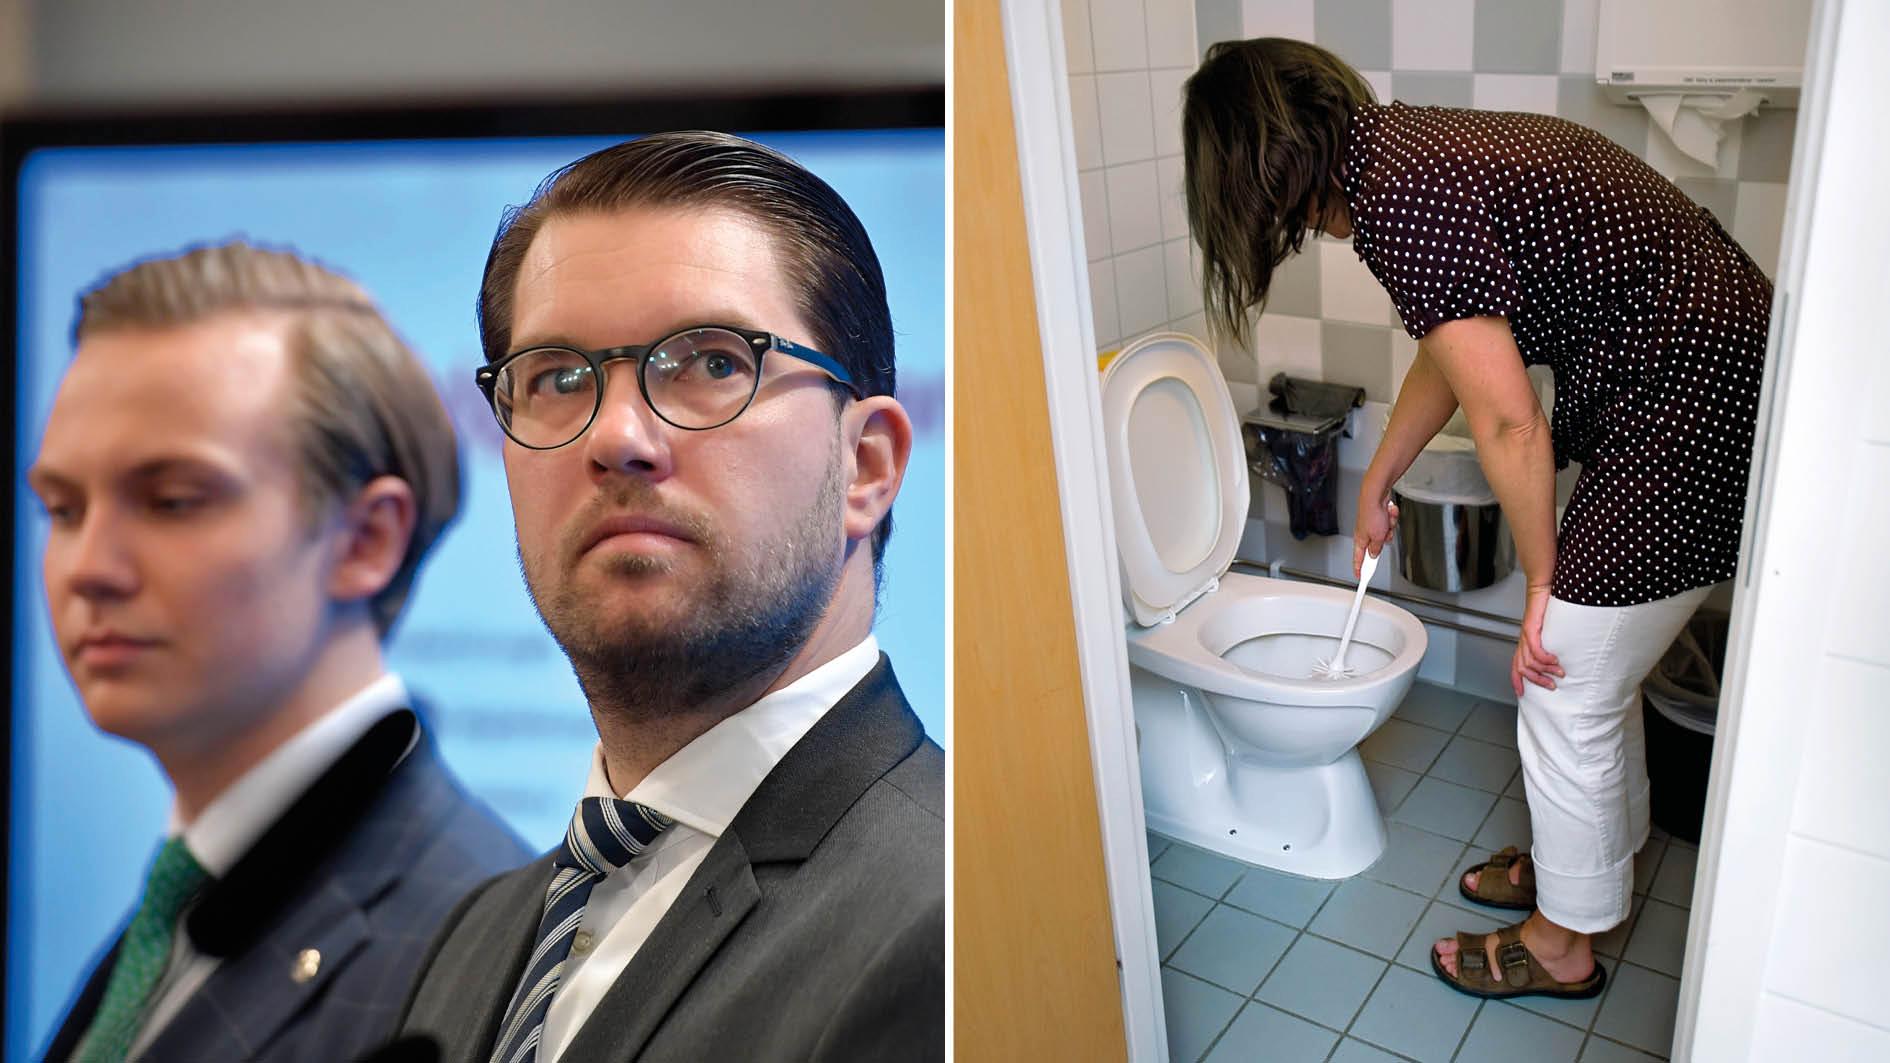 I onsdags presenterade SD:s Tobias Andersson förslaget att barn och unga ska kunna straffas med ”förminskande” samhällstjänst som att städa toaletter. Här blottas ett djupt förakt mot både människor och städare som yrkesgrupp, skriver städare och fackliga representanter.